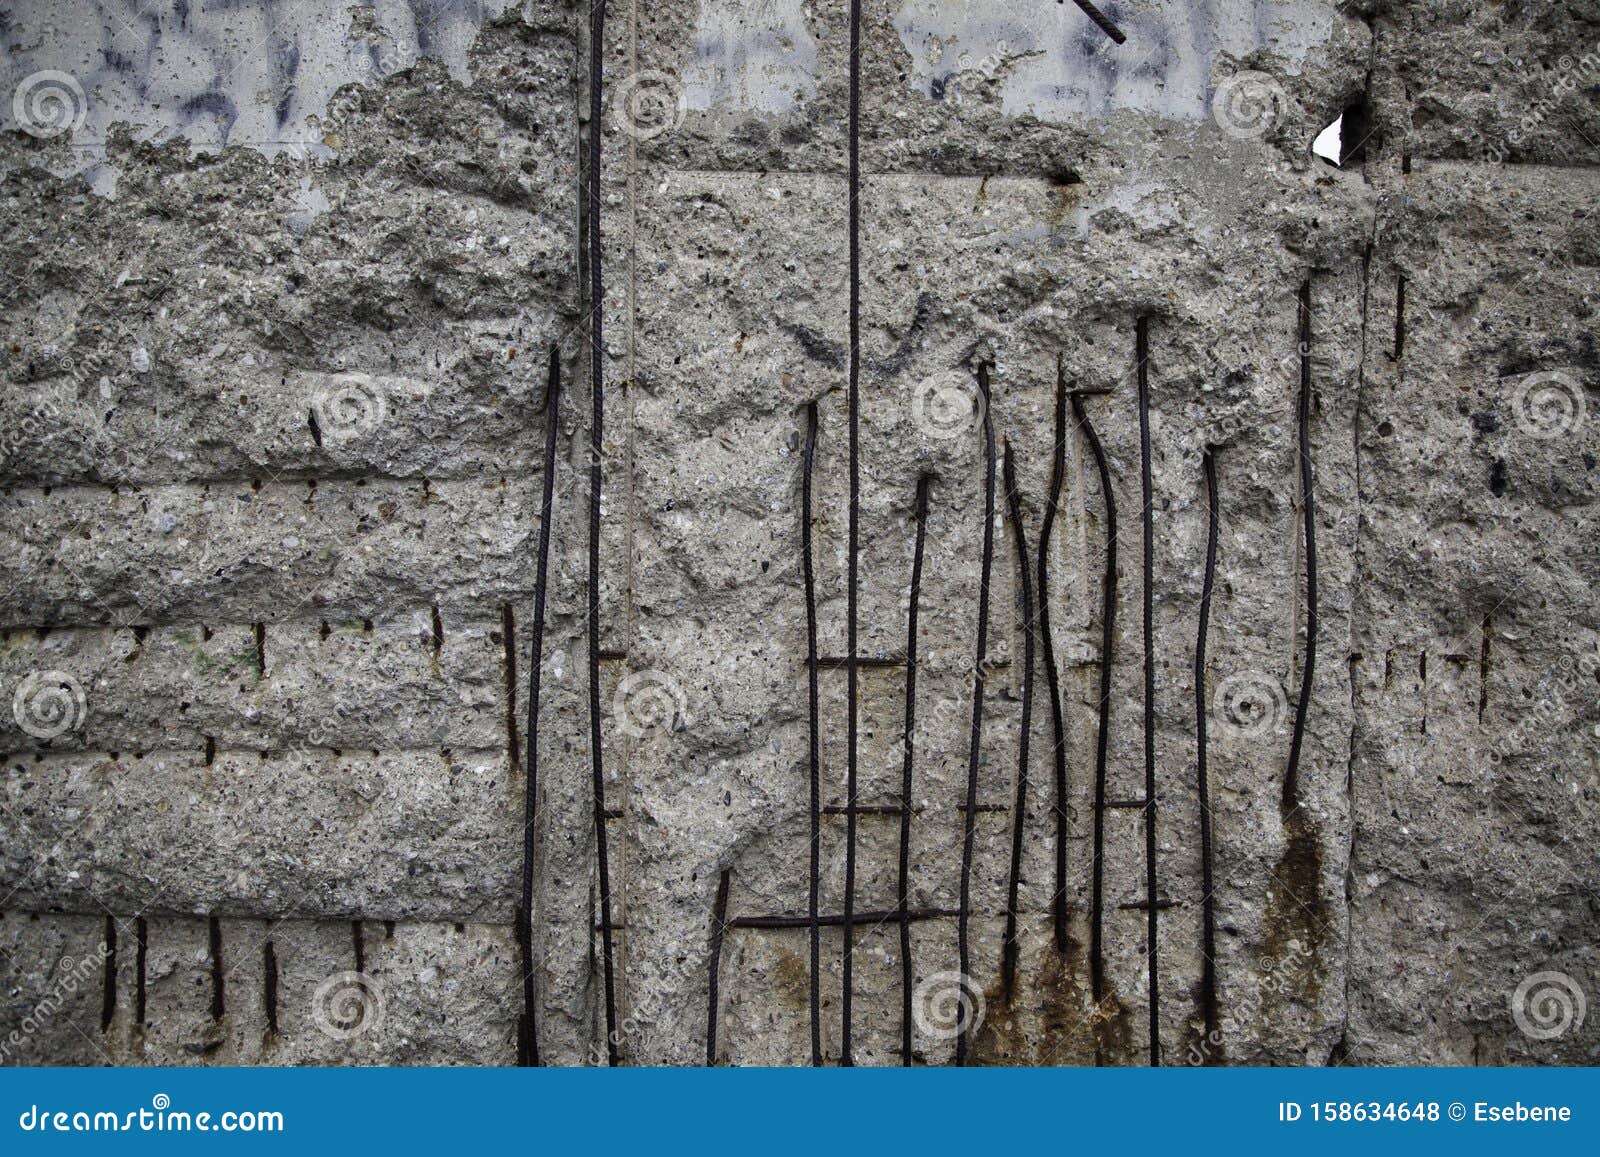 visit berlin wall remains